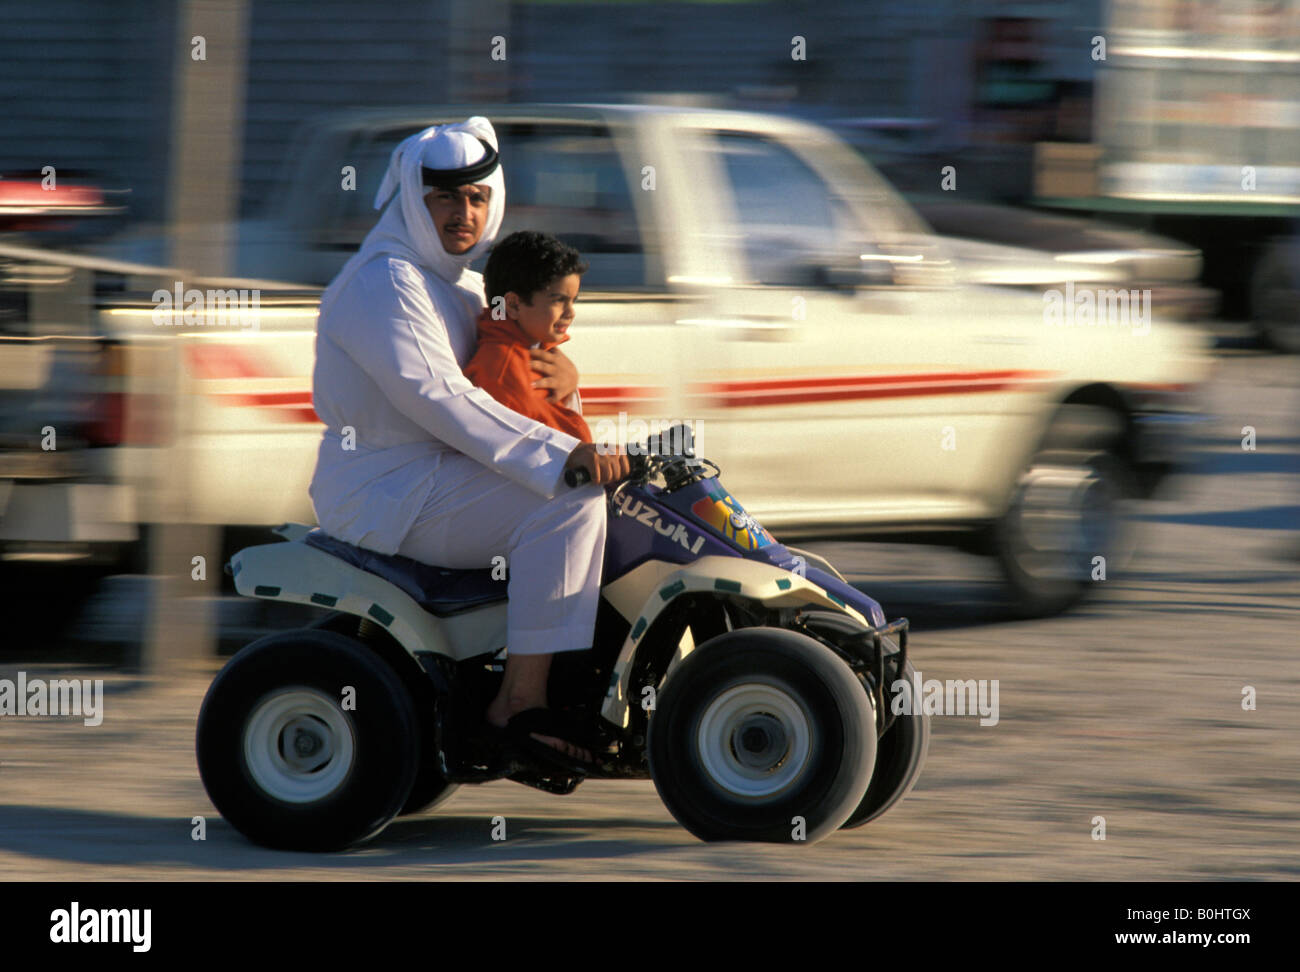 Un homme et enfant sur un quad, l'Arabie Saoudite. Banque D'Images